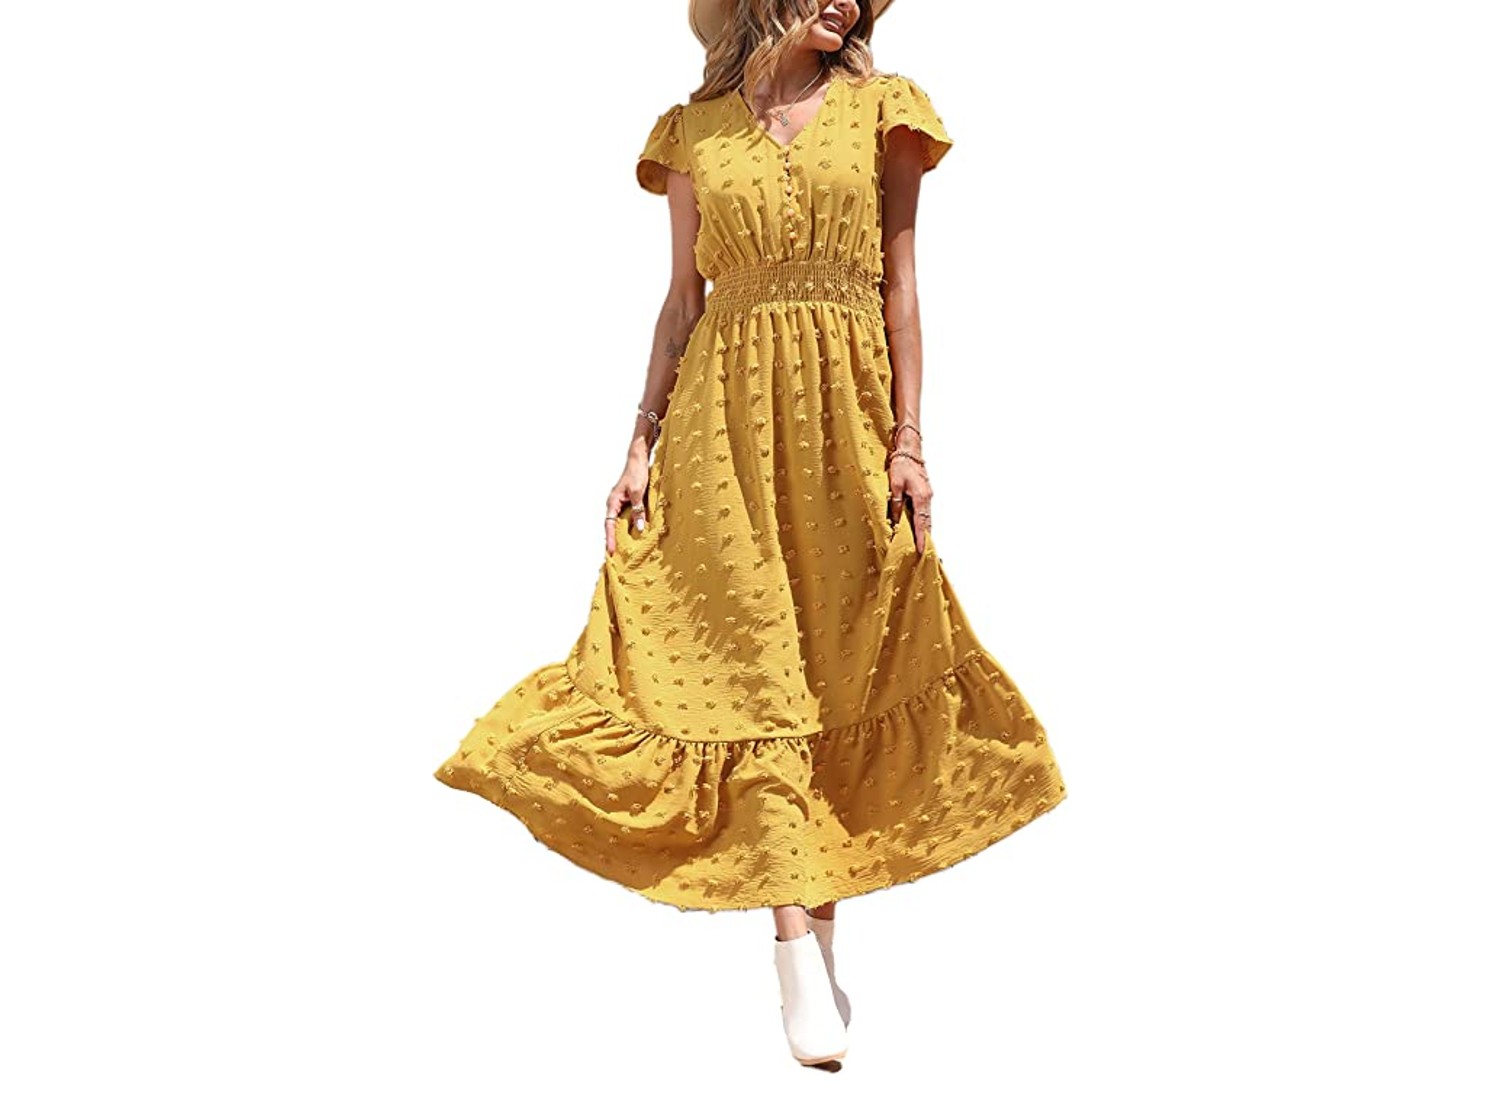 A women wearing a yellow flowy dress.